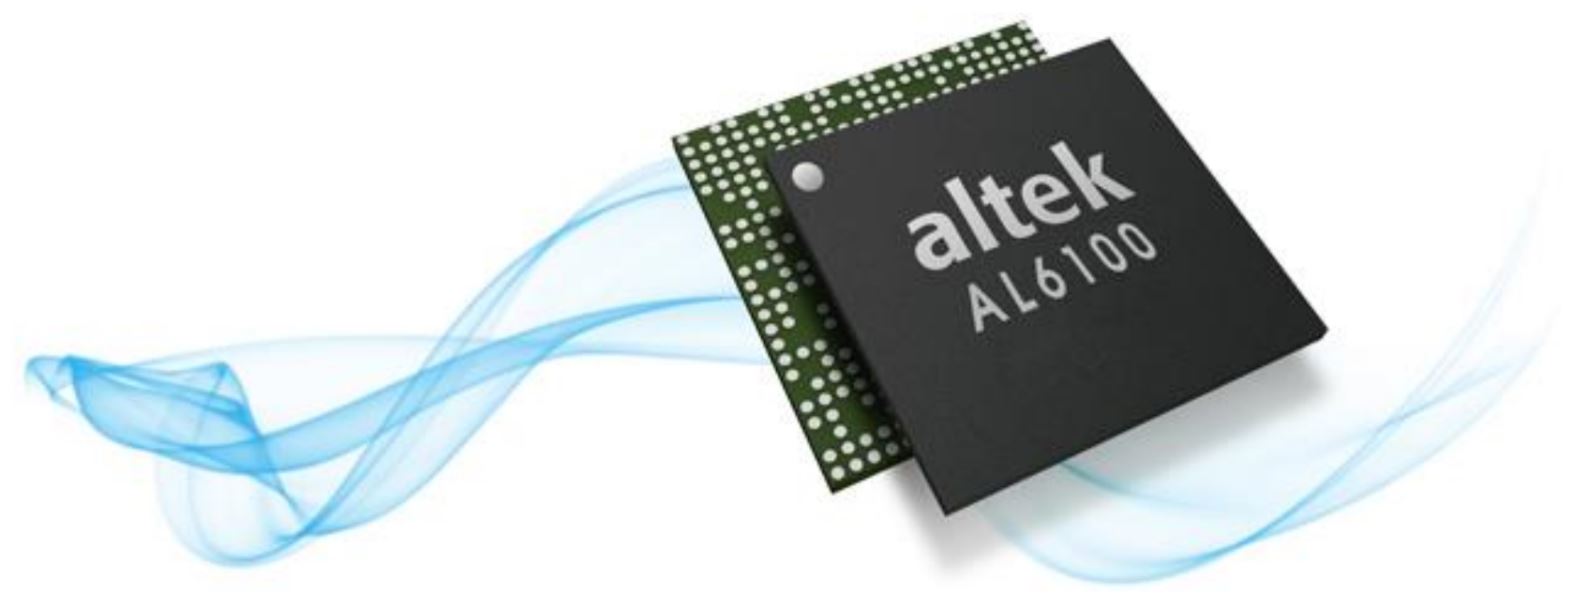 Altek AL6100 3D Depth Sensing Chip 2017